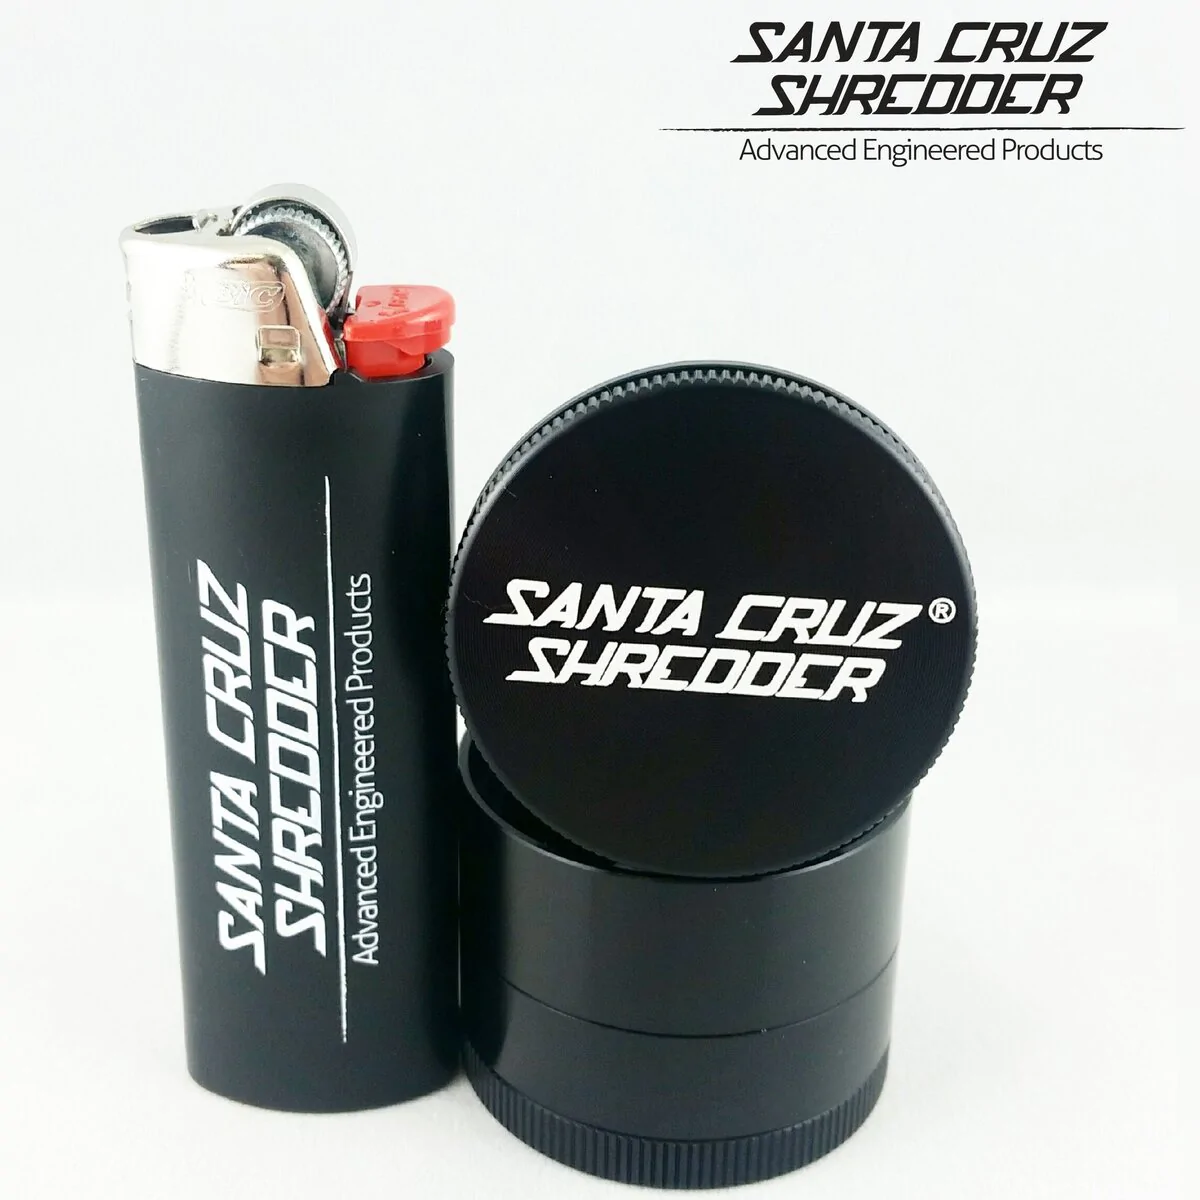 Santa Cruz Shredder 4-Piece Small Grinder